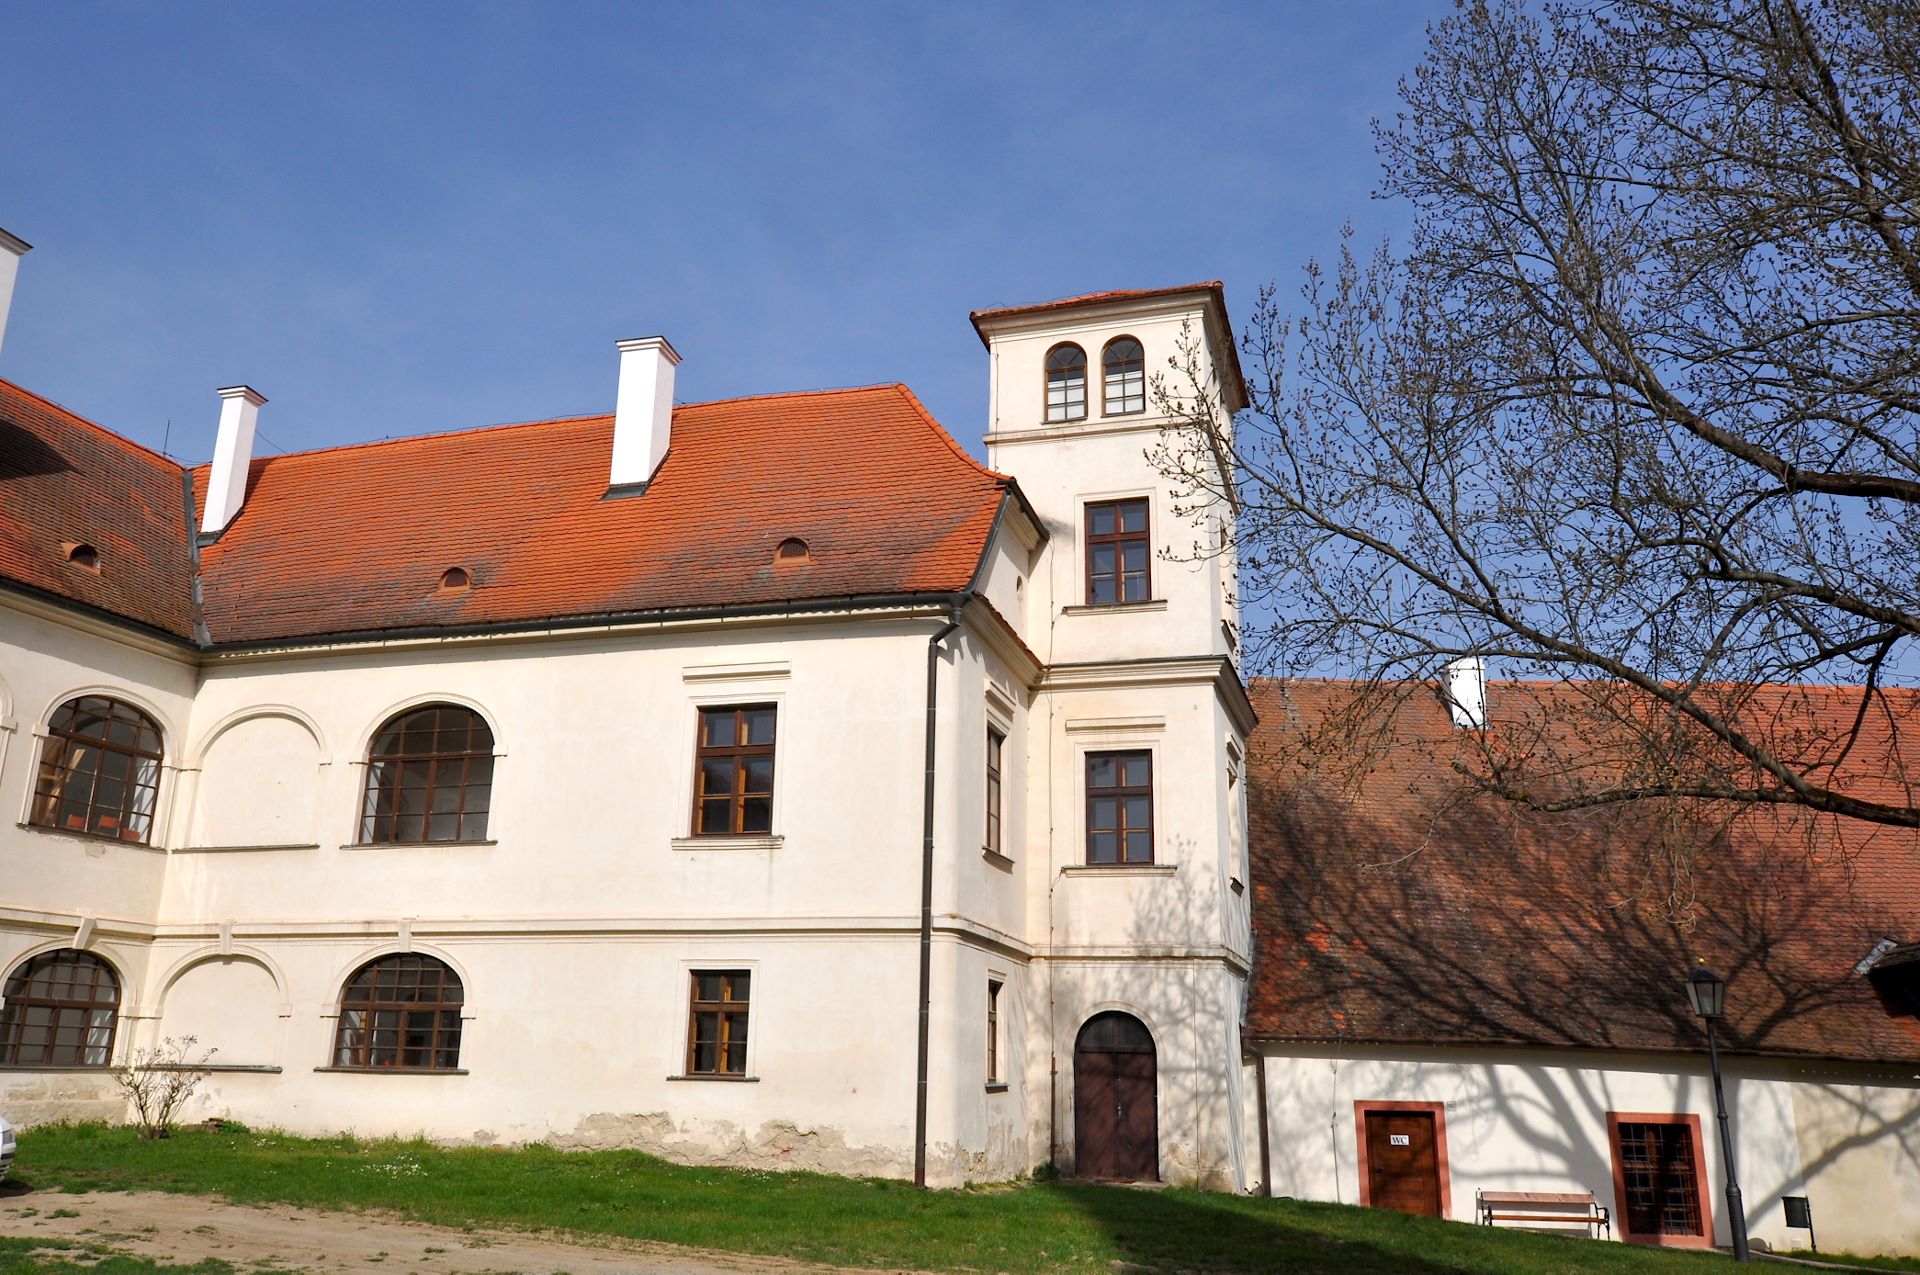 Die Klosteranlage Porta Coeli